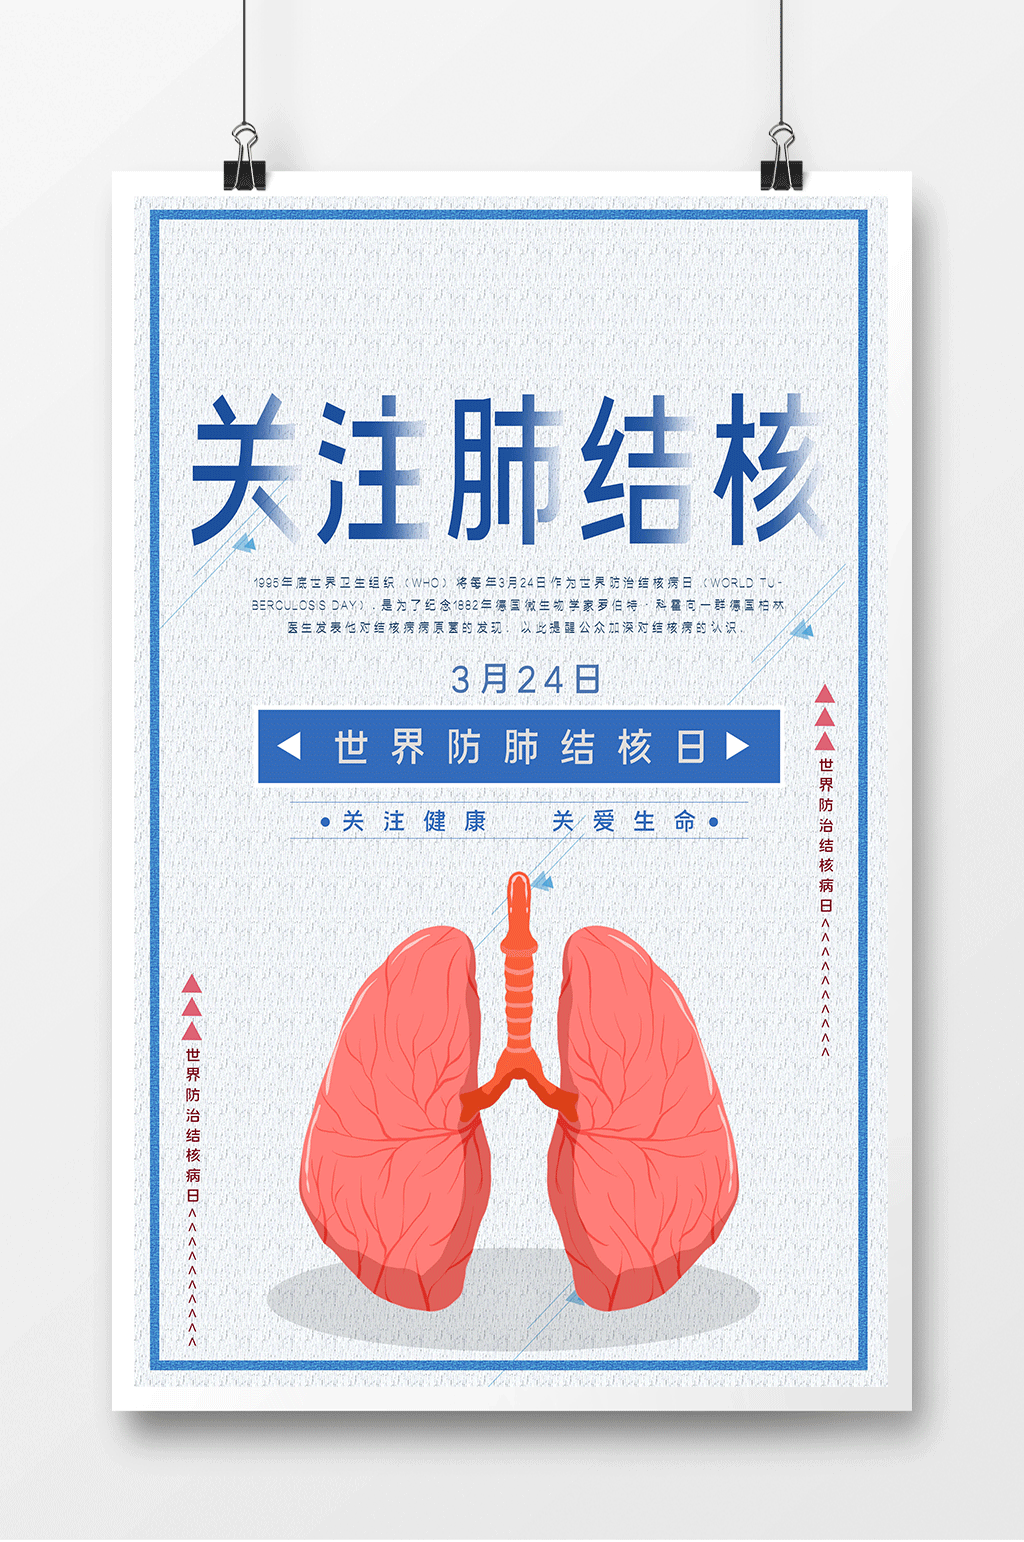 肺结核宣传海报电子版图片